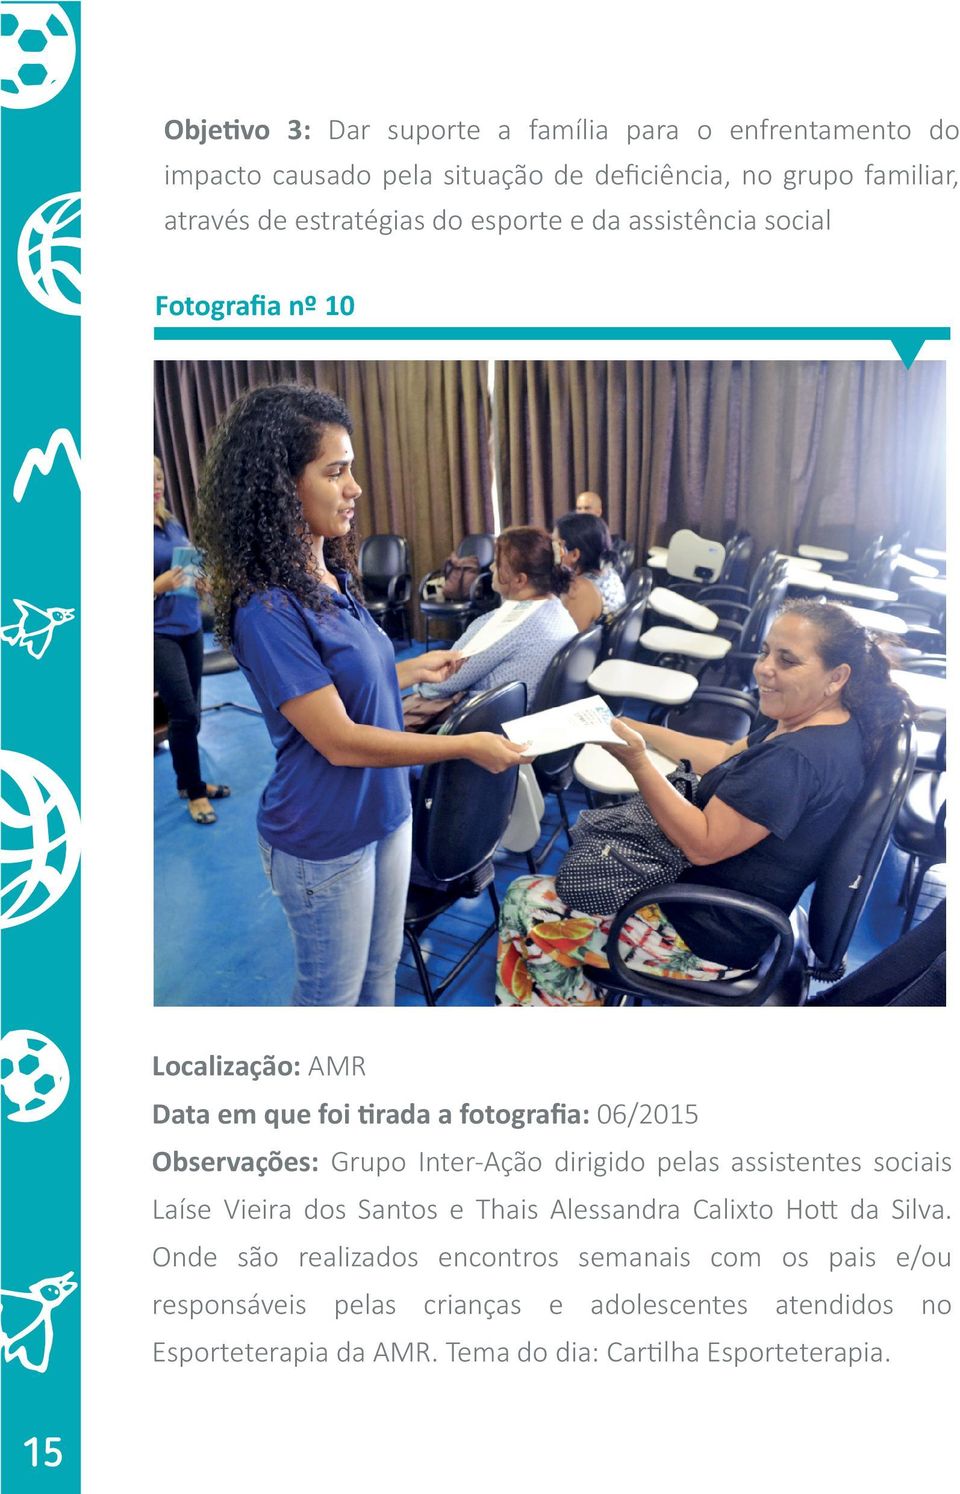 Inter-Ação dirigido pelas assistentes sociais Laíse Vieira dos Santos e Thais Alessandra Calixto Hott da Silva.